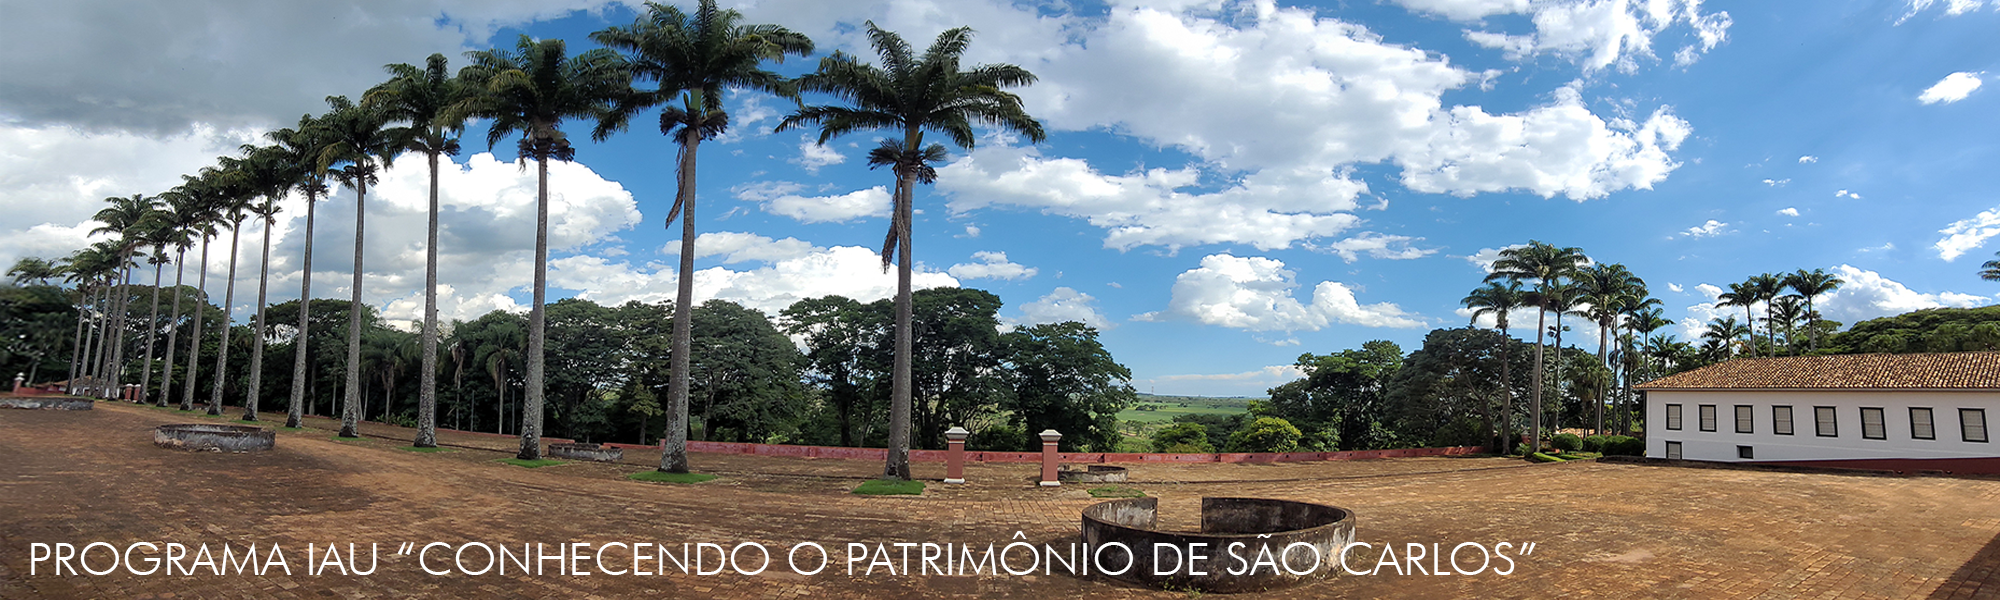 Programa IAU “Conhecendo o Patrimônio de São Carlos”